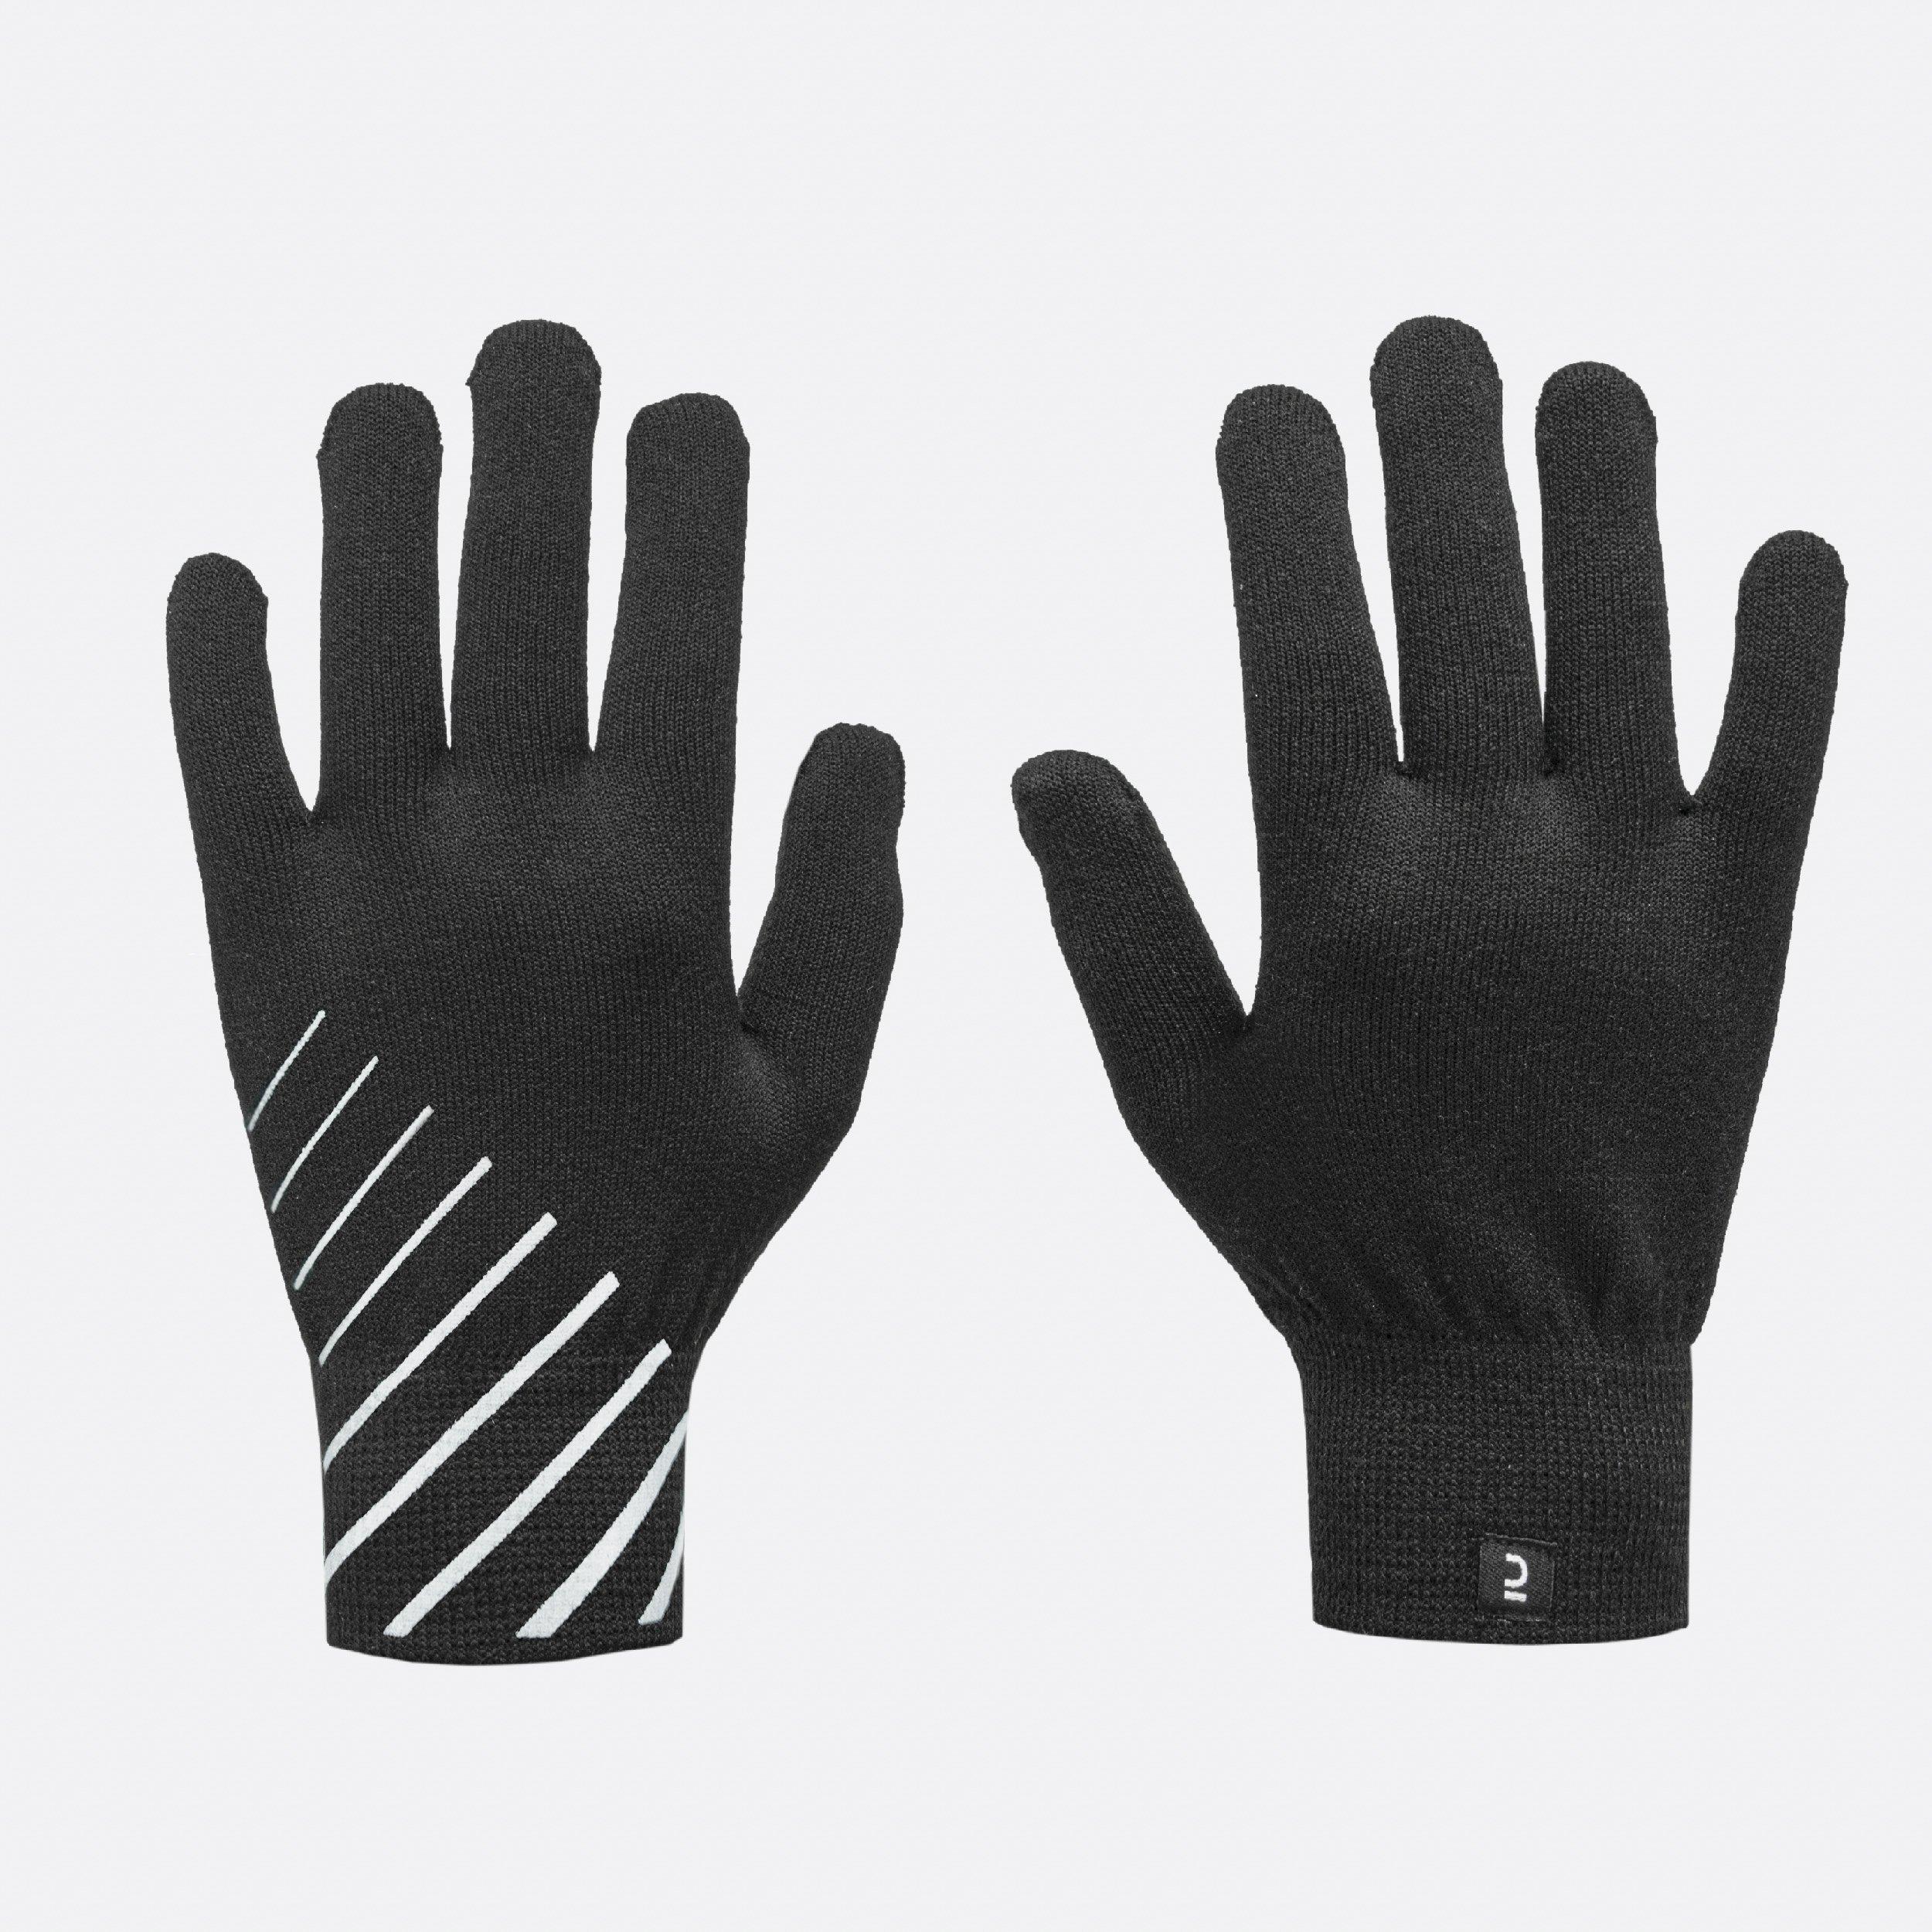 Decathlon Running Gloves